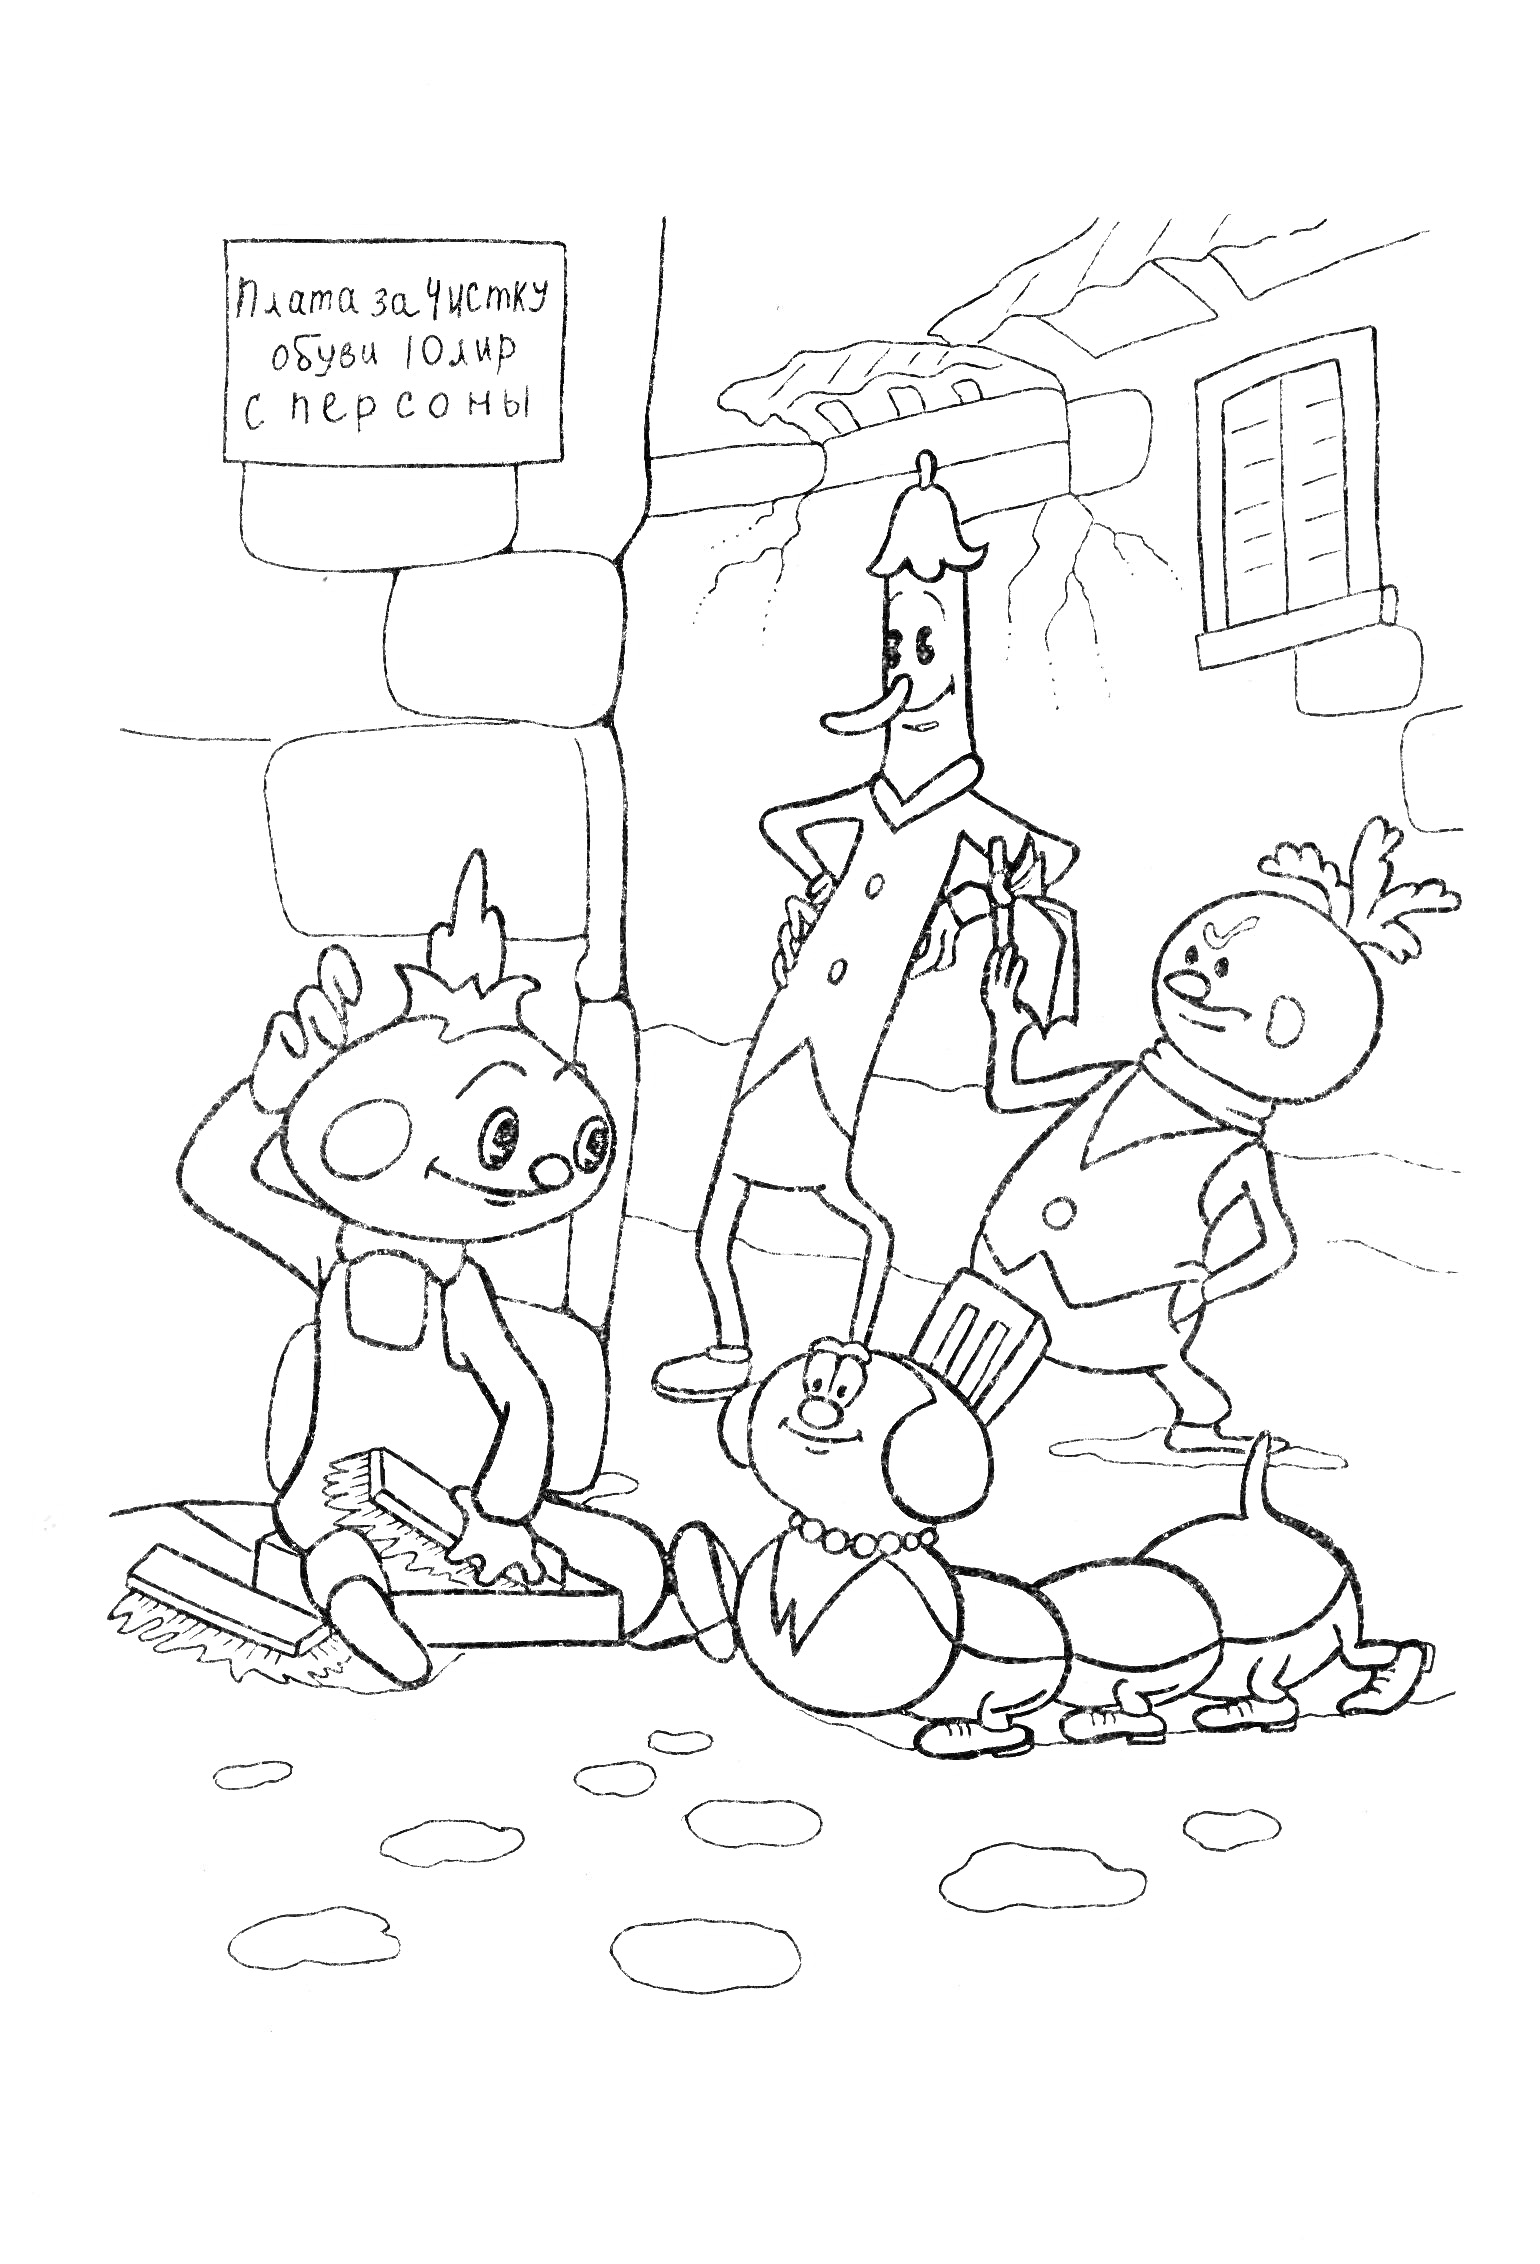 Раскраска Чиполлино и его друзья сидят и стоят на улице возле таблички 